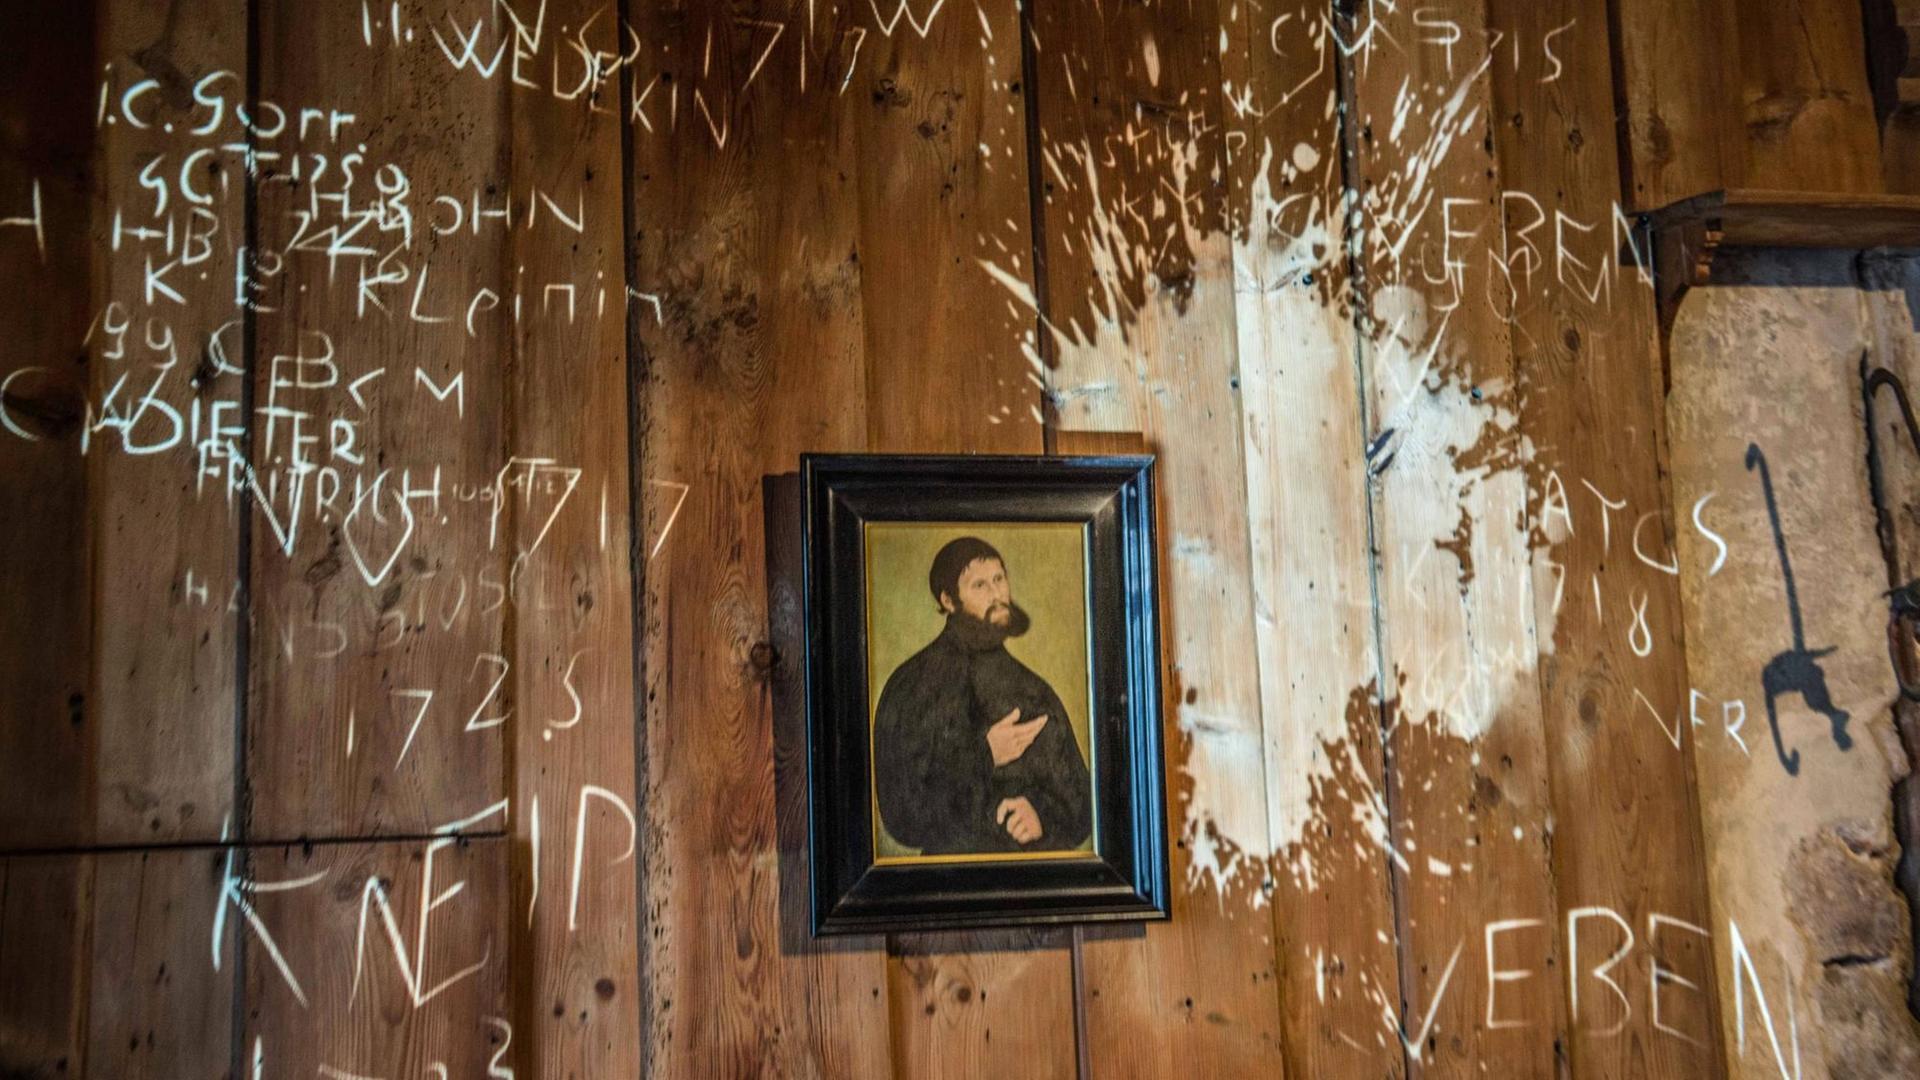 Nicht Poltergeist - nach dem Teufel selbst soll Luther ein Tintenfass geworfen haben. Der Fleck wird im Rahmen einer Ausstellung an die Wand projeziert.